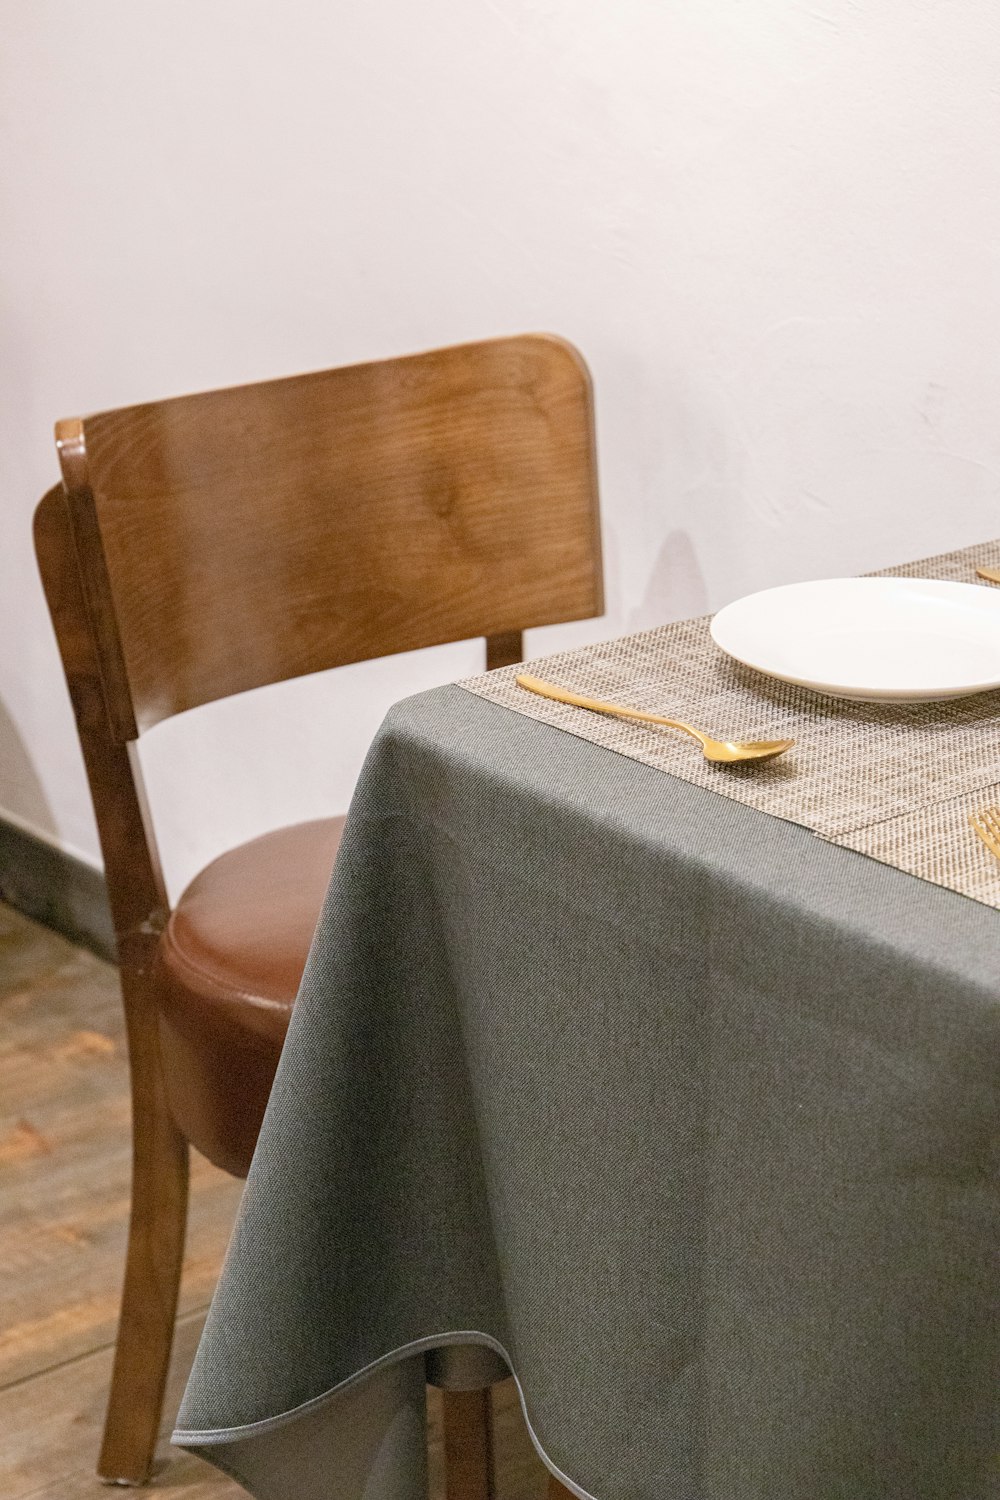 une table avec une assiette et de l’argenterie dessus